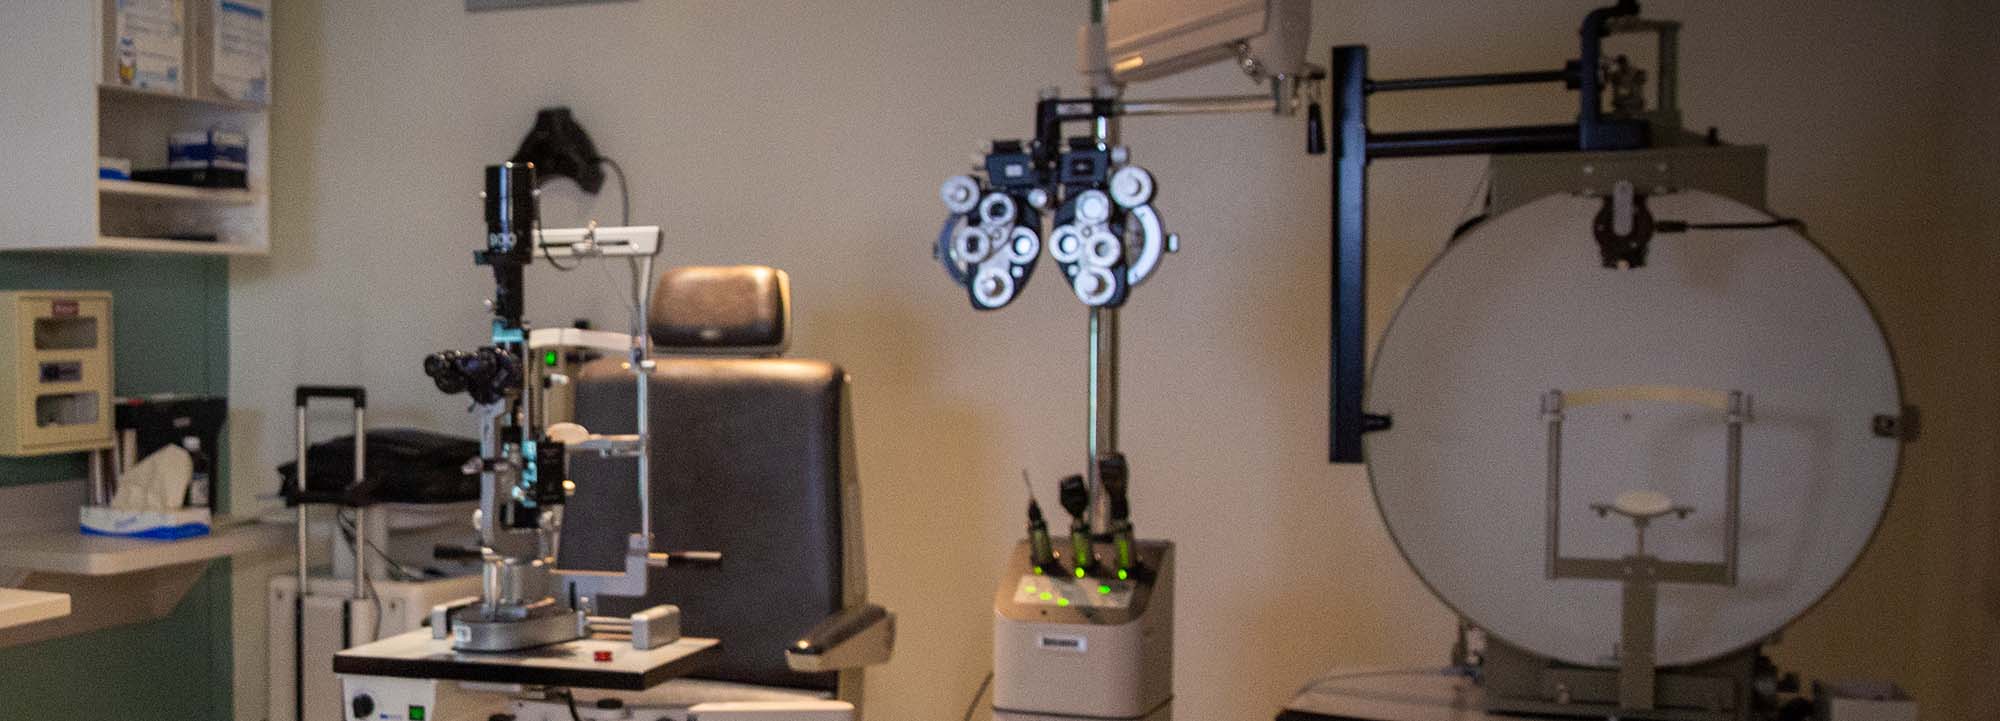 Dụng cụ nhãn khoa trong phòng khám mắt